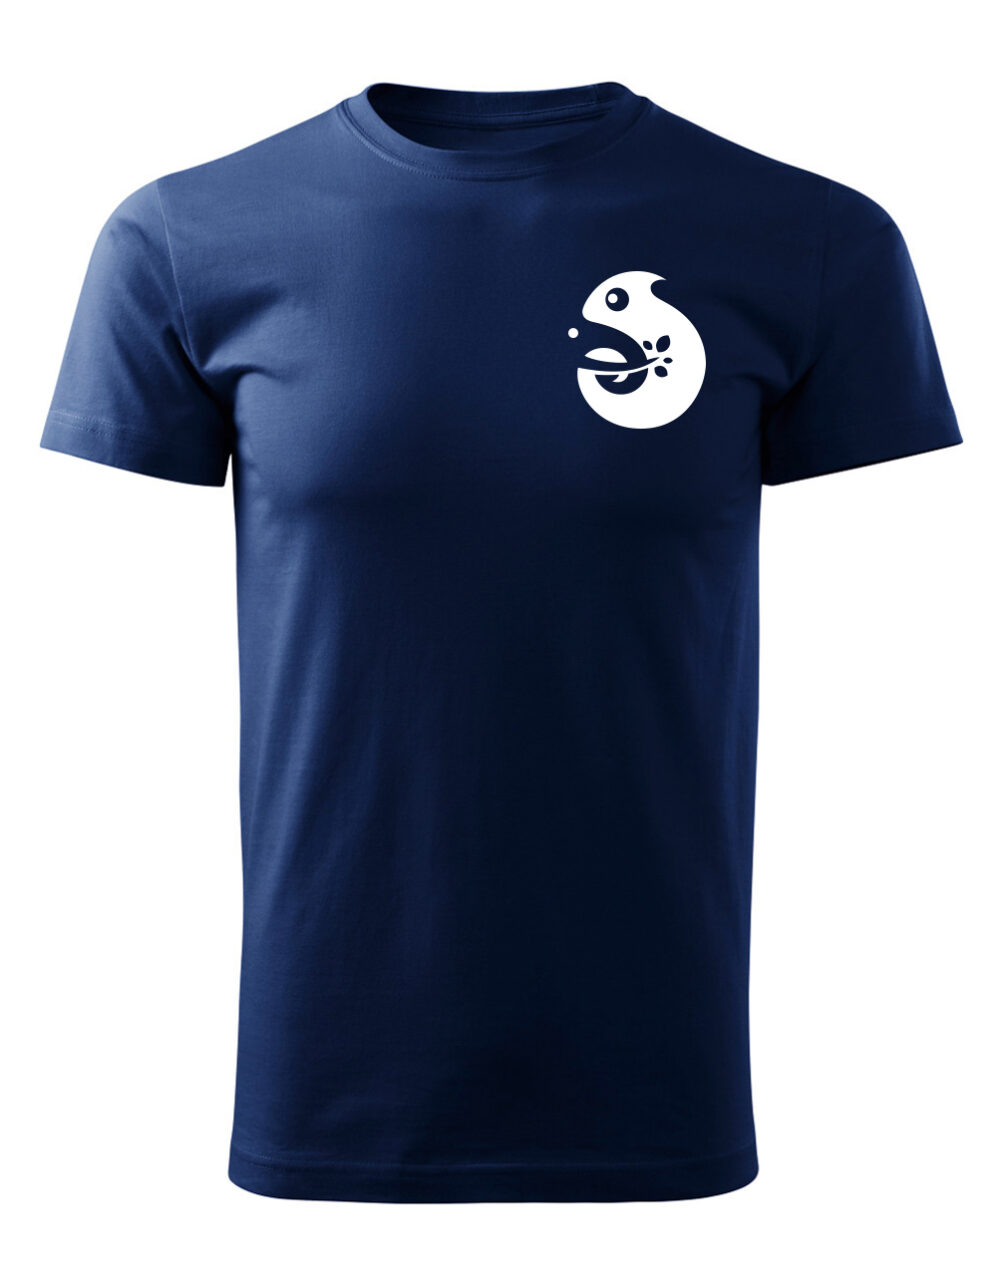 Pánské tričko s potiskem Chameleon námořní modrá